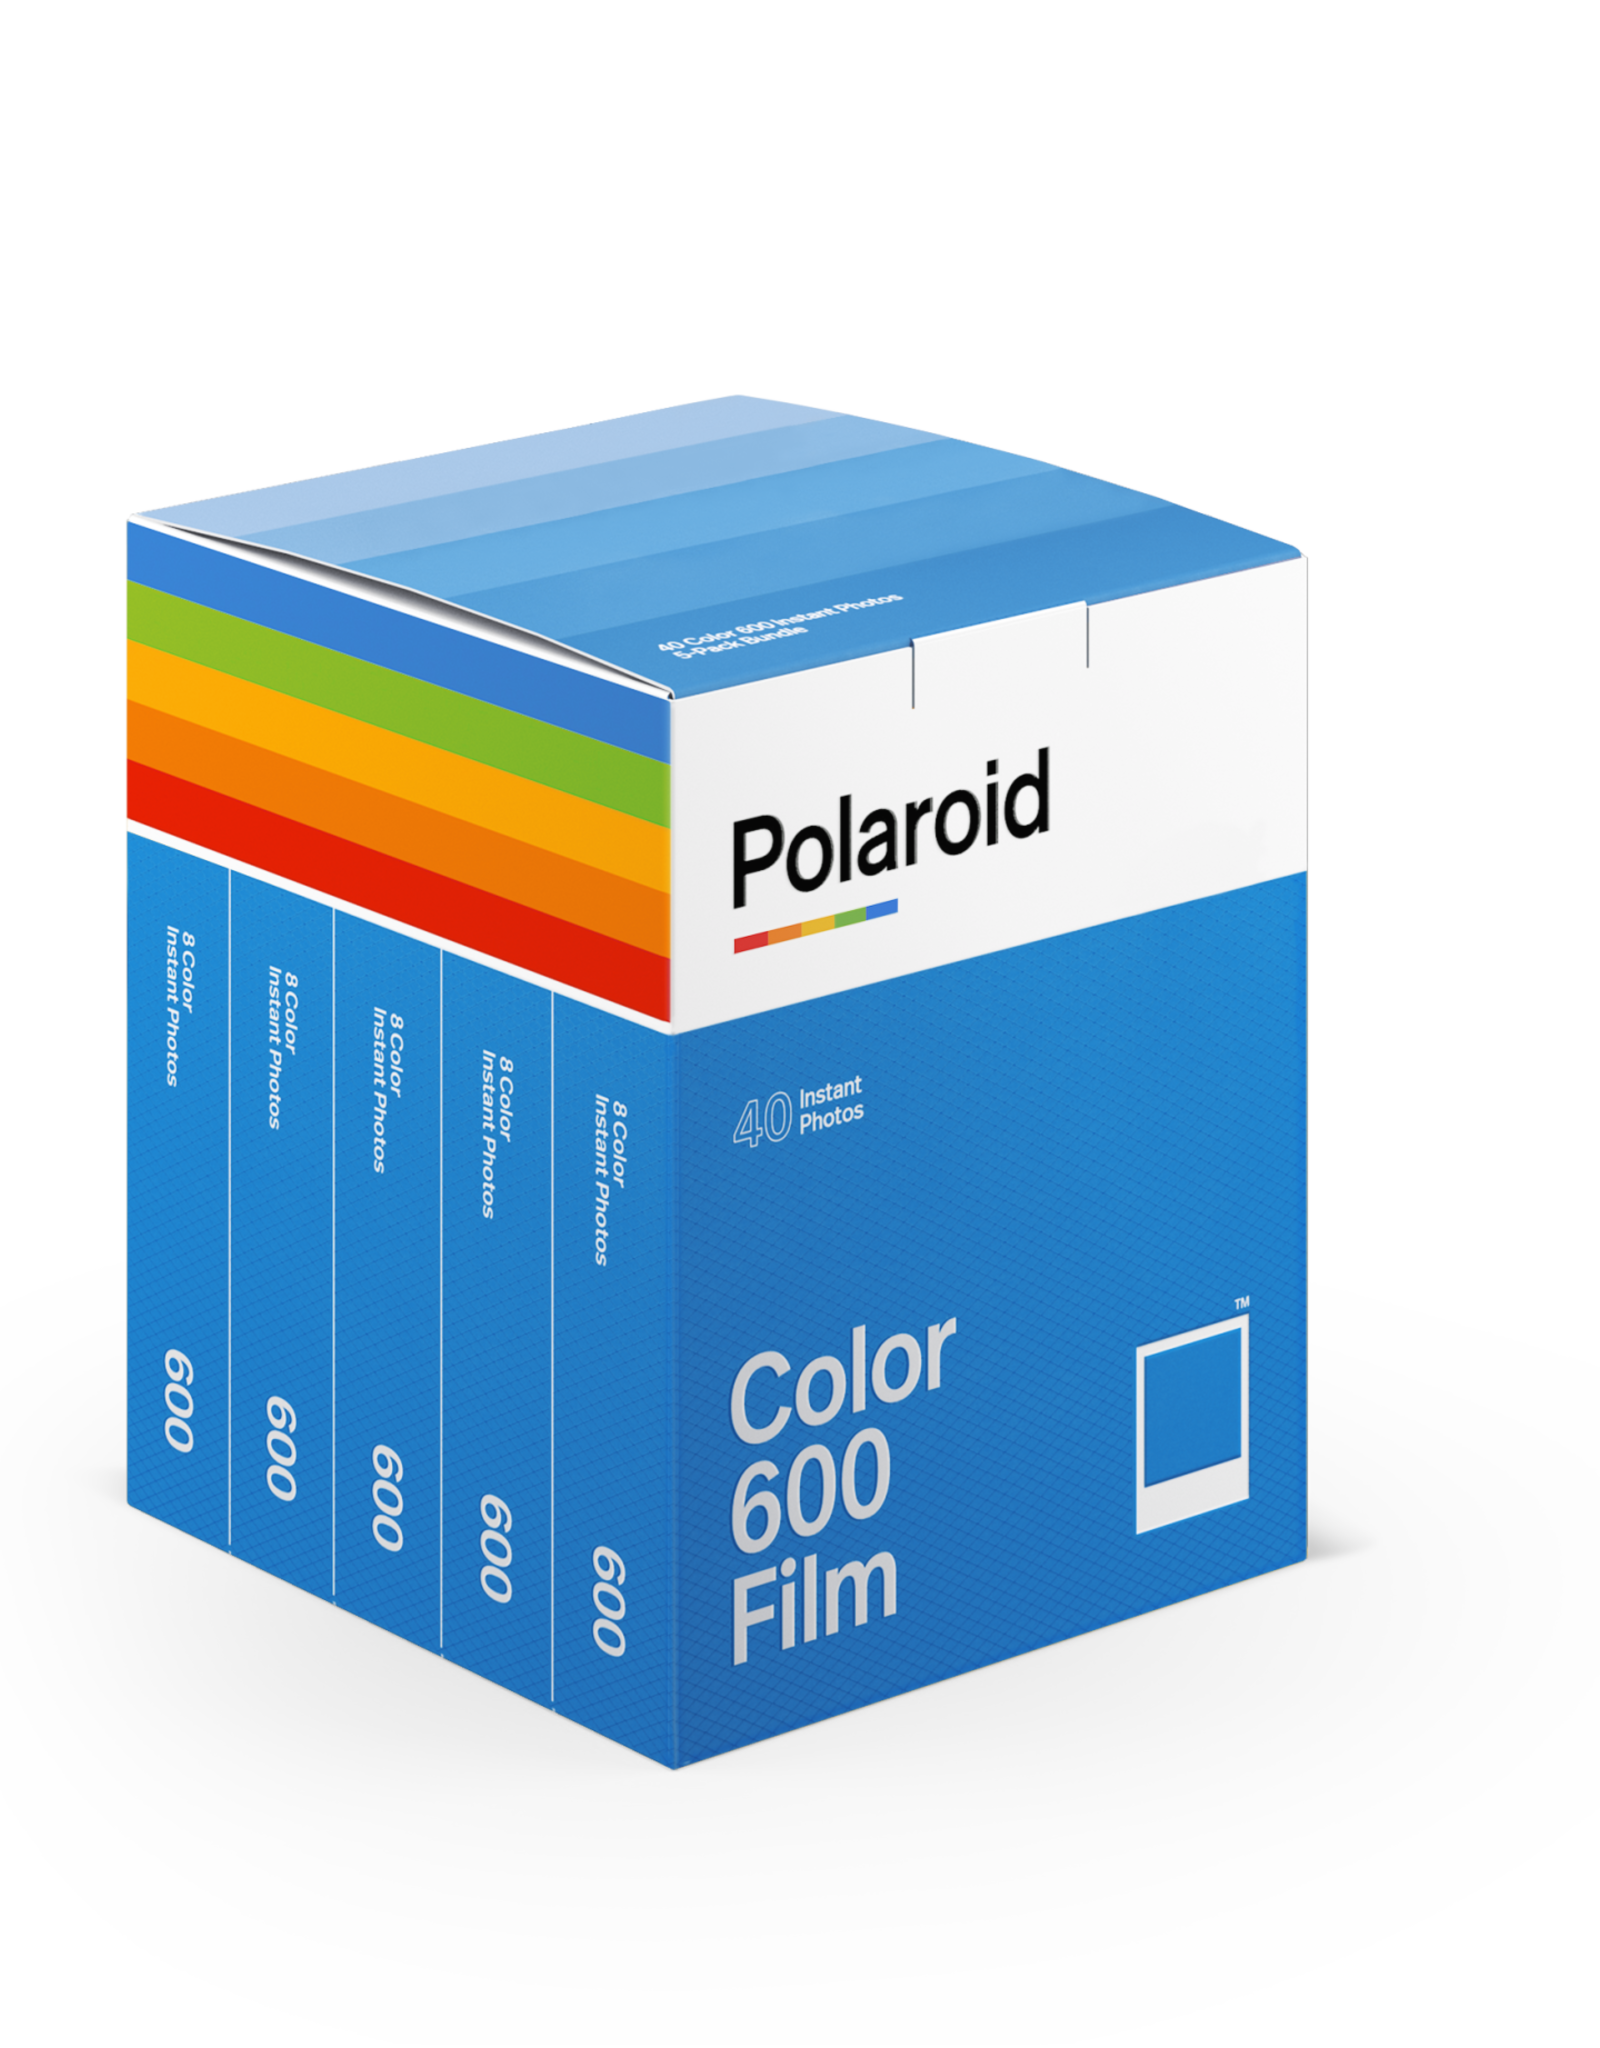 Polaroid Polaroid Type 600 Film